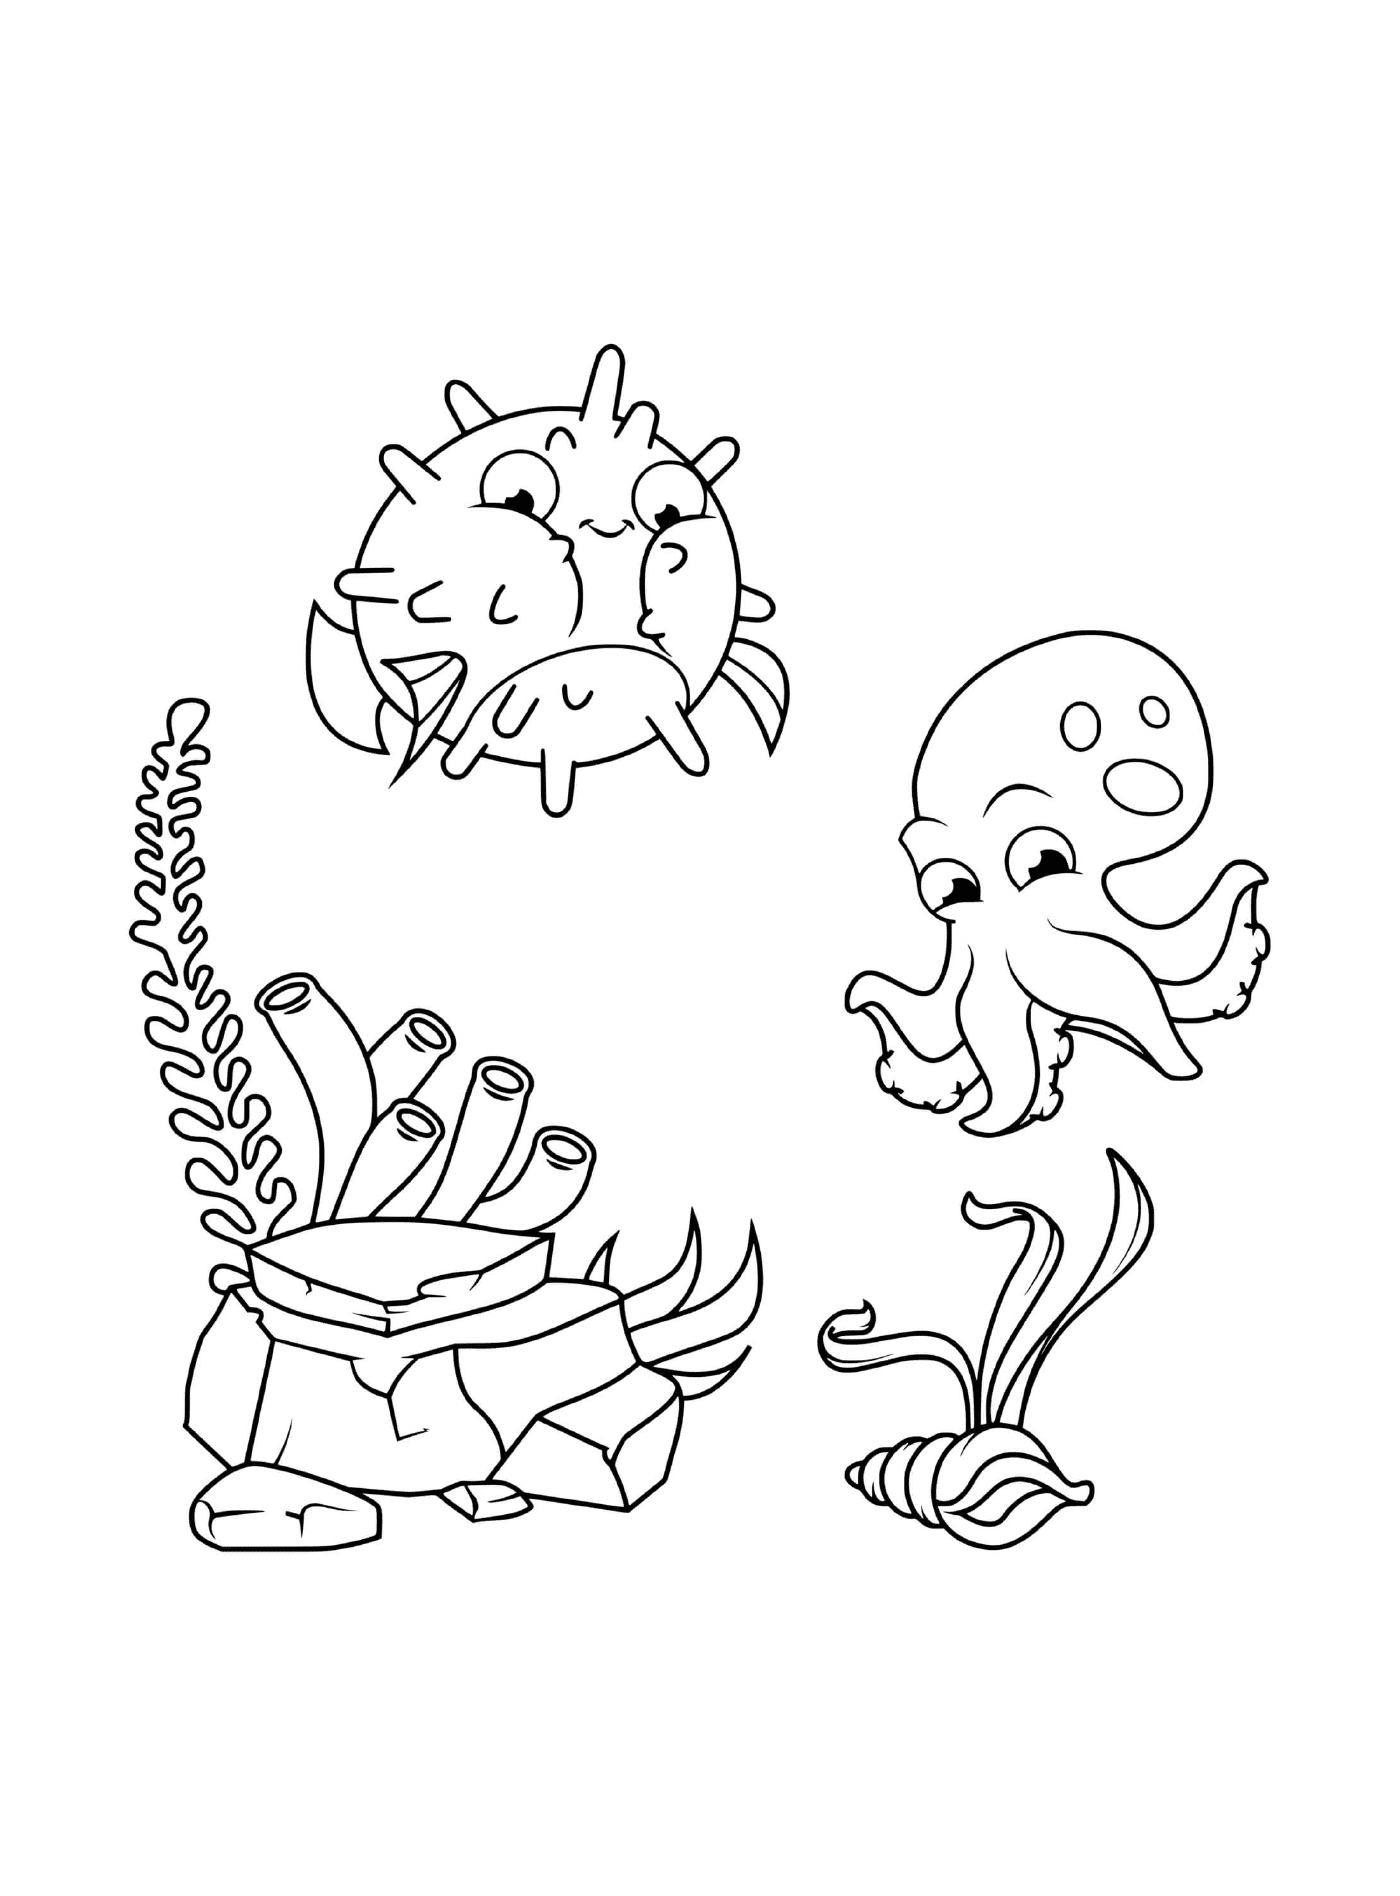   une pieuvre, un crabe, un poisson et des algues dessinés ensemble 